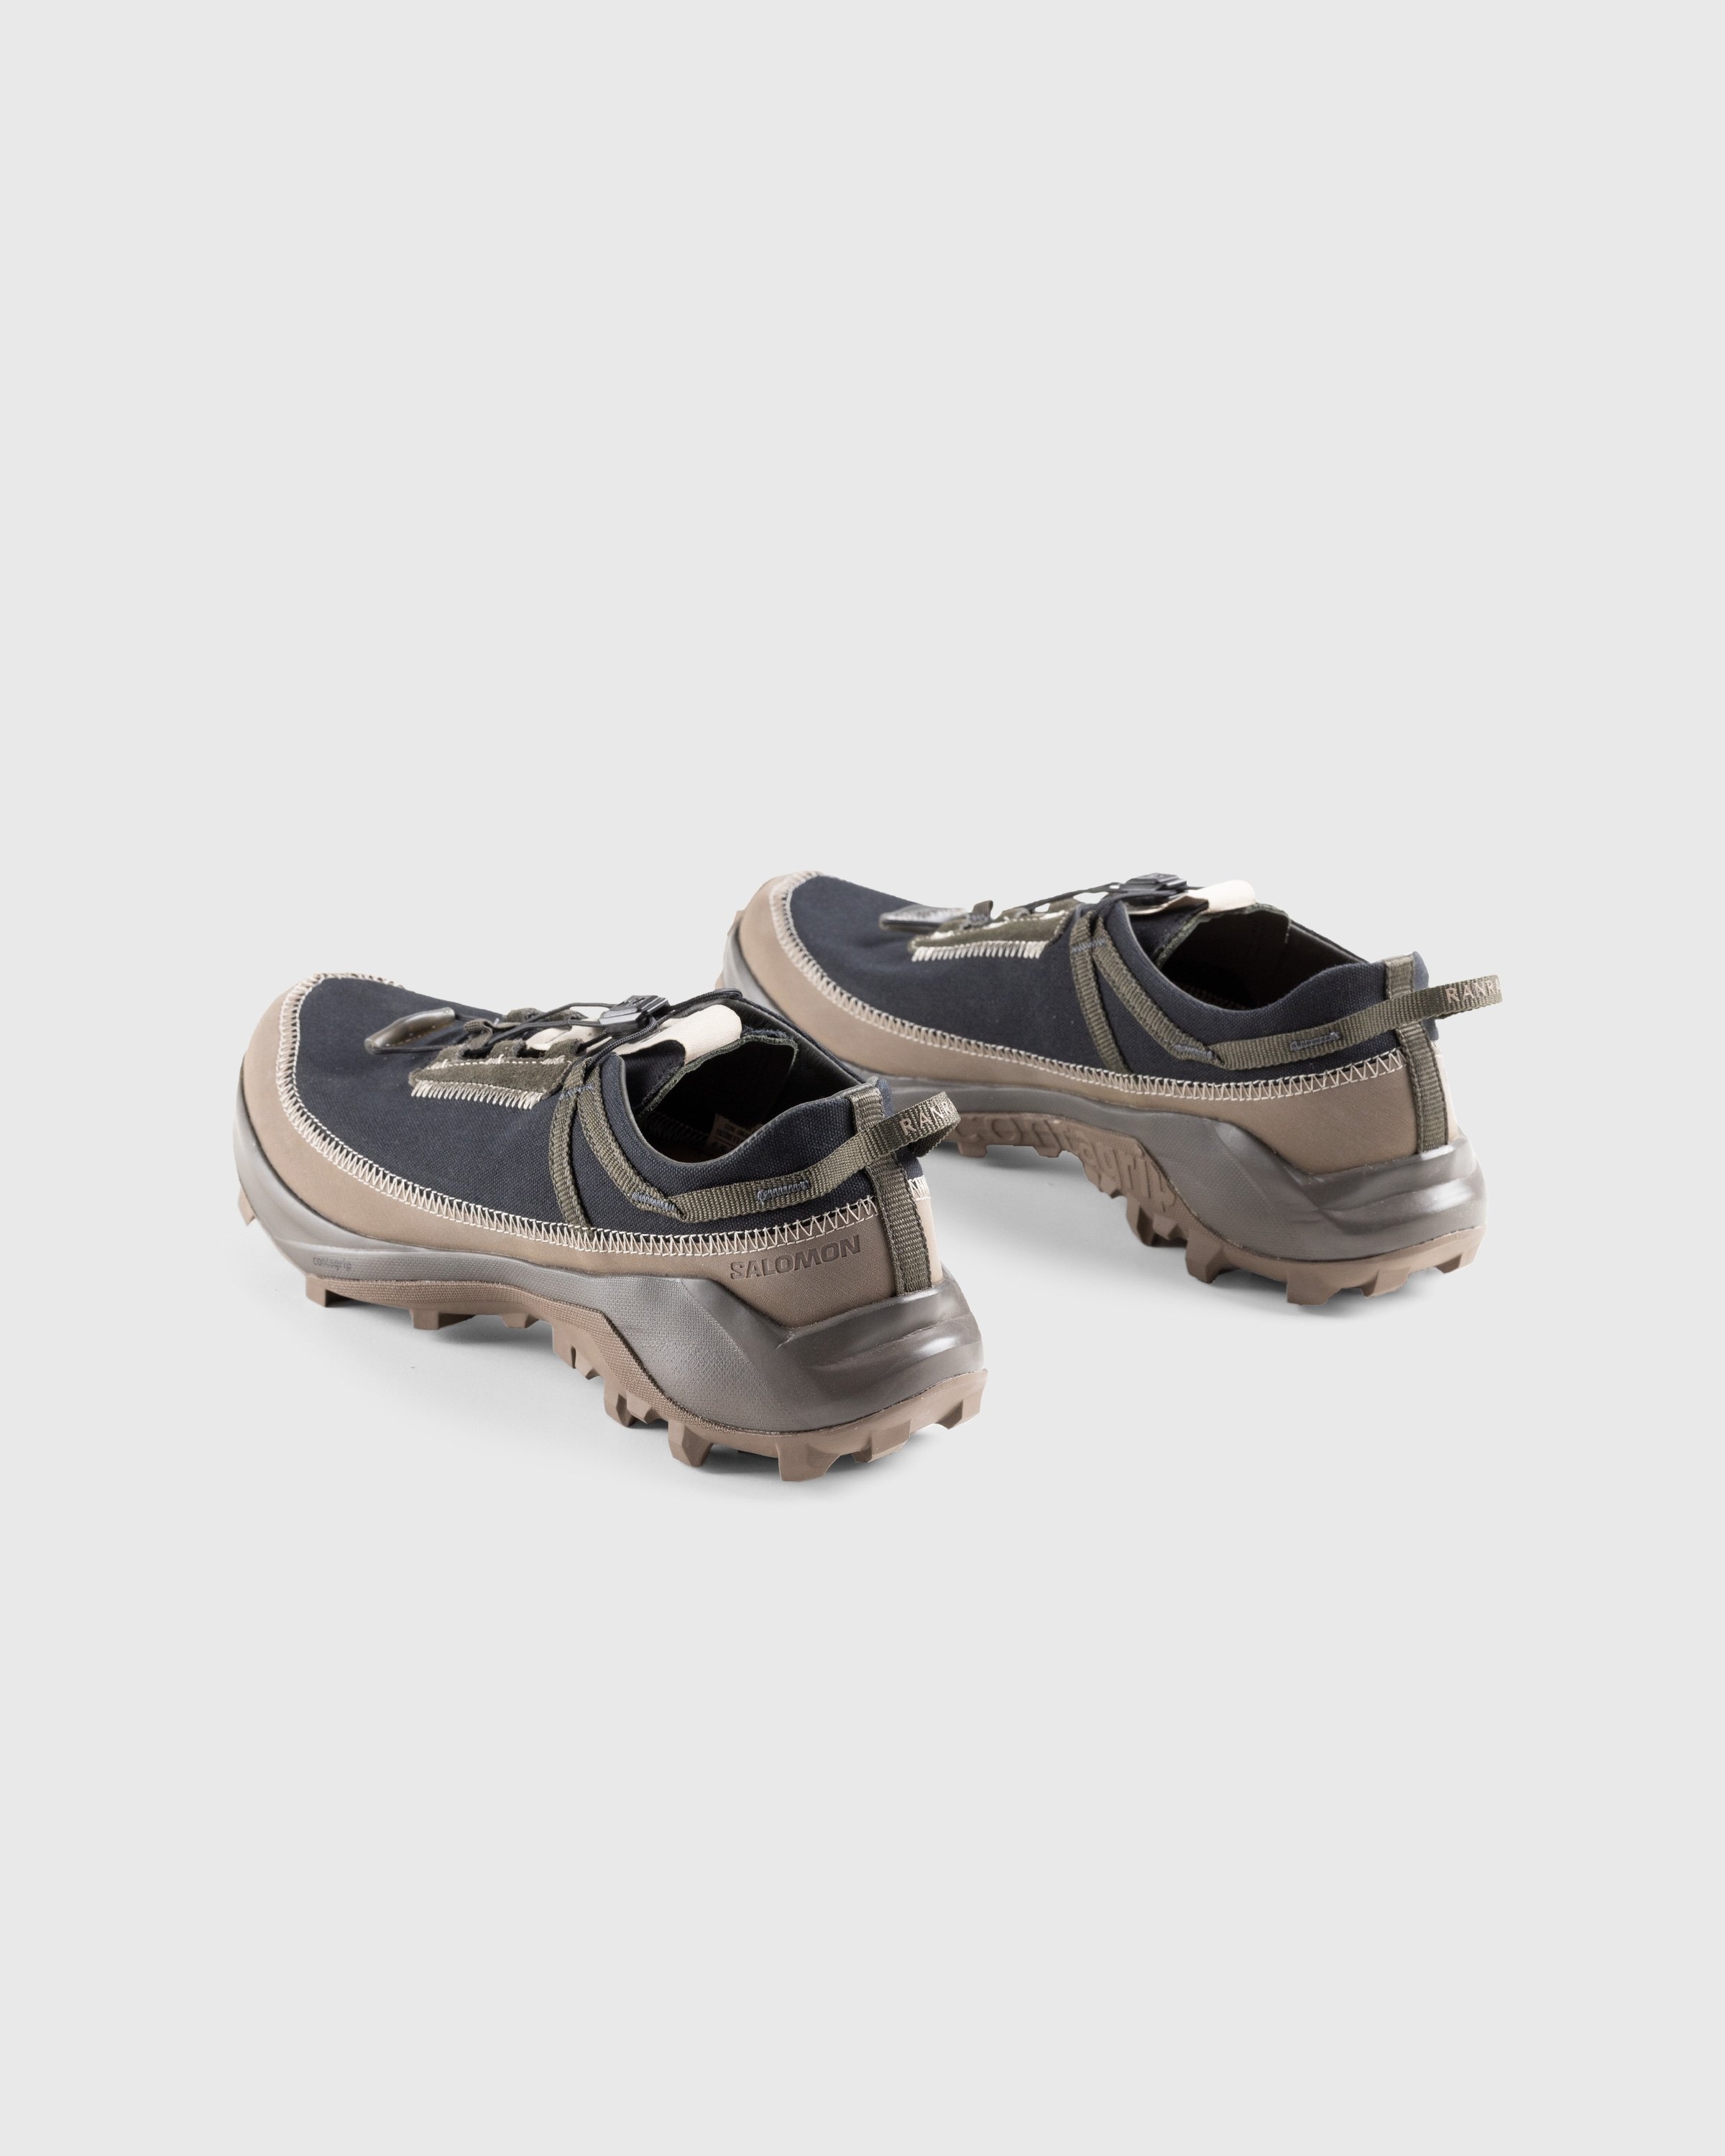 RANRA x Salomon – Cross Pro Peat/Major - Low Top Sneakers - Black - Image 4